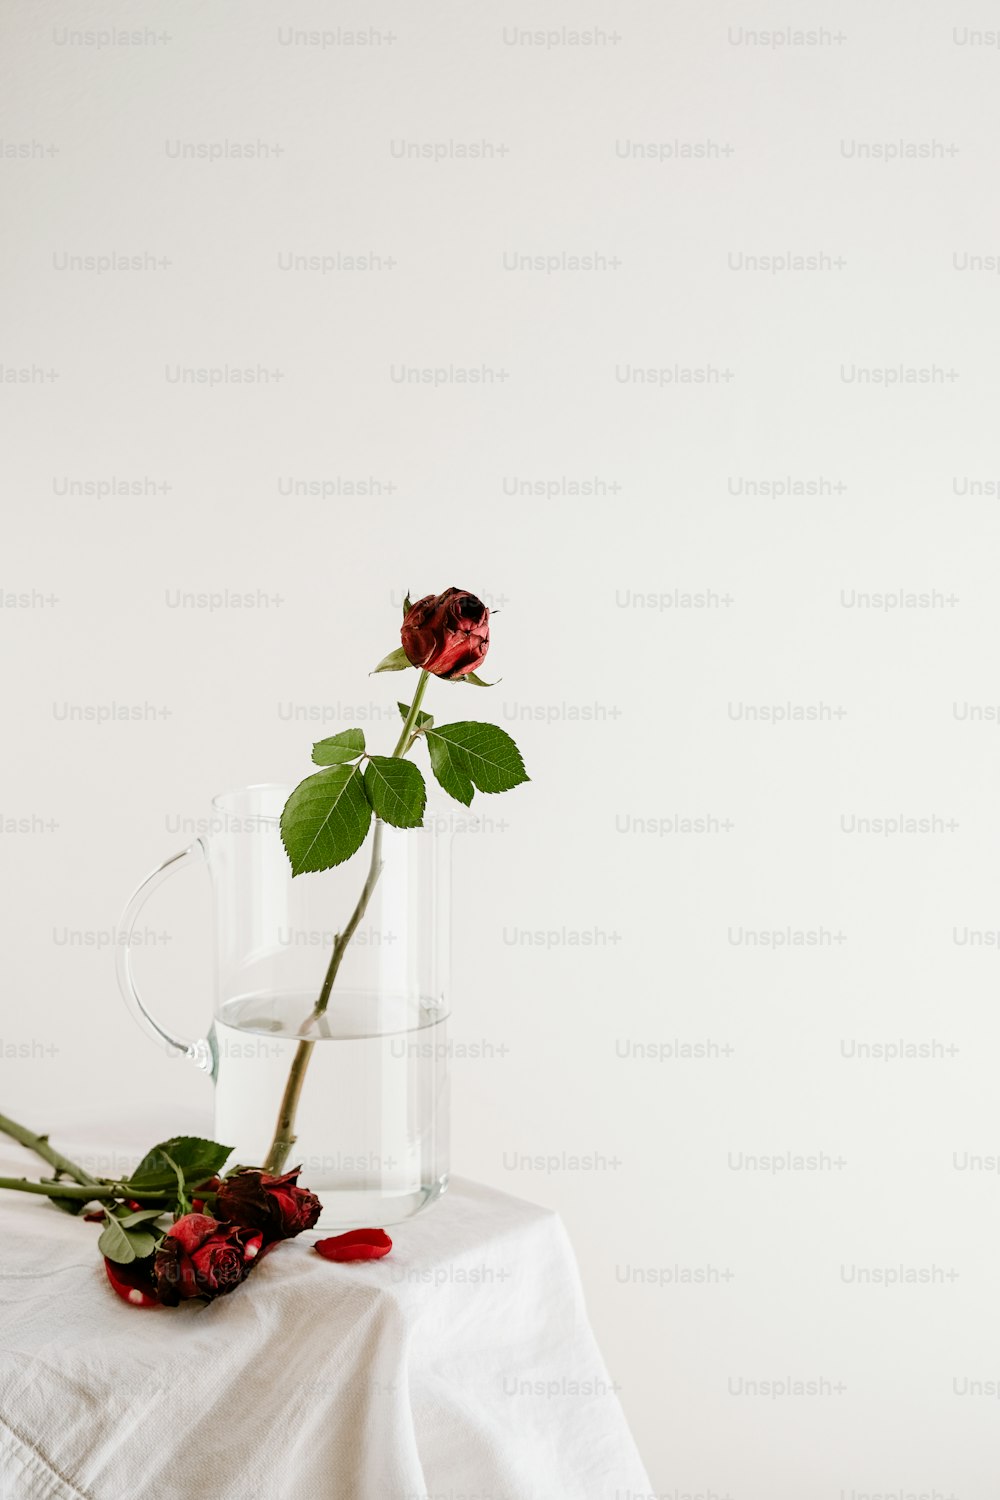 테이블 위의 유리 꽃병에 담긴 장미 한 송이